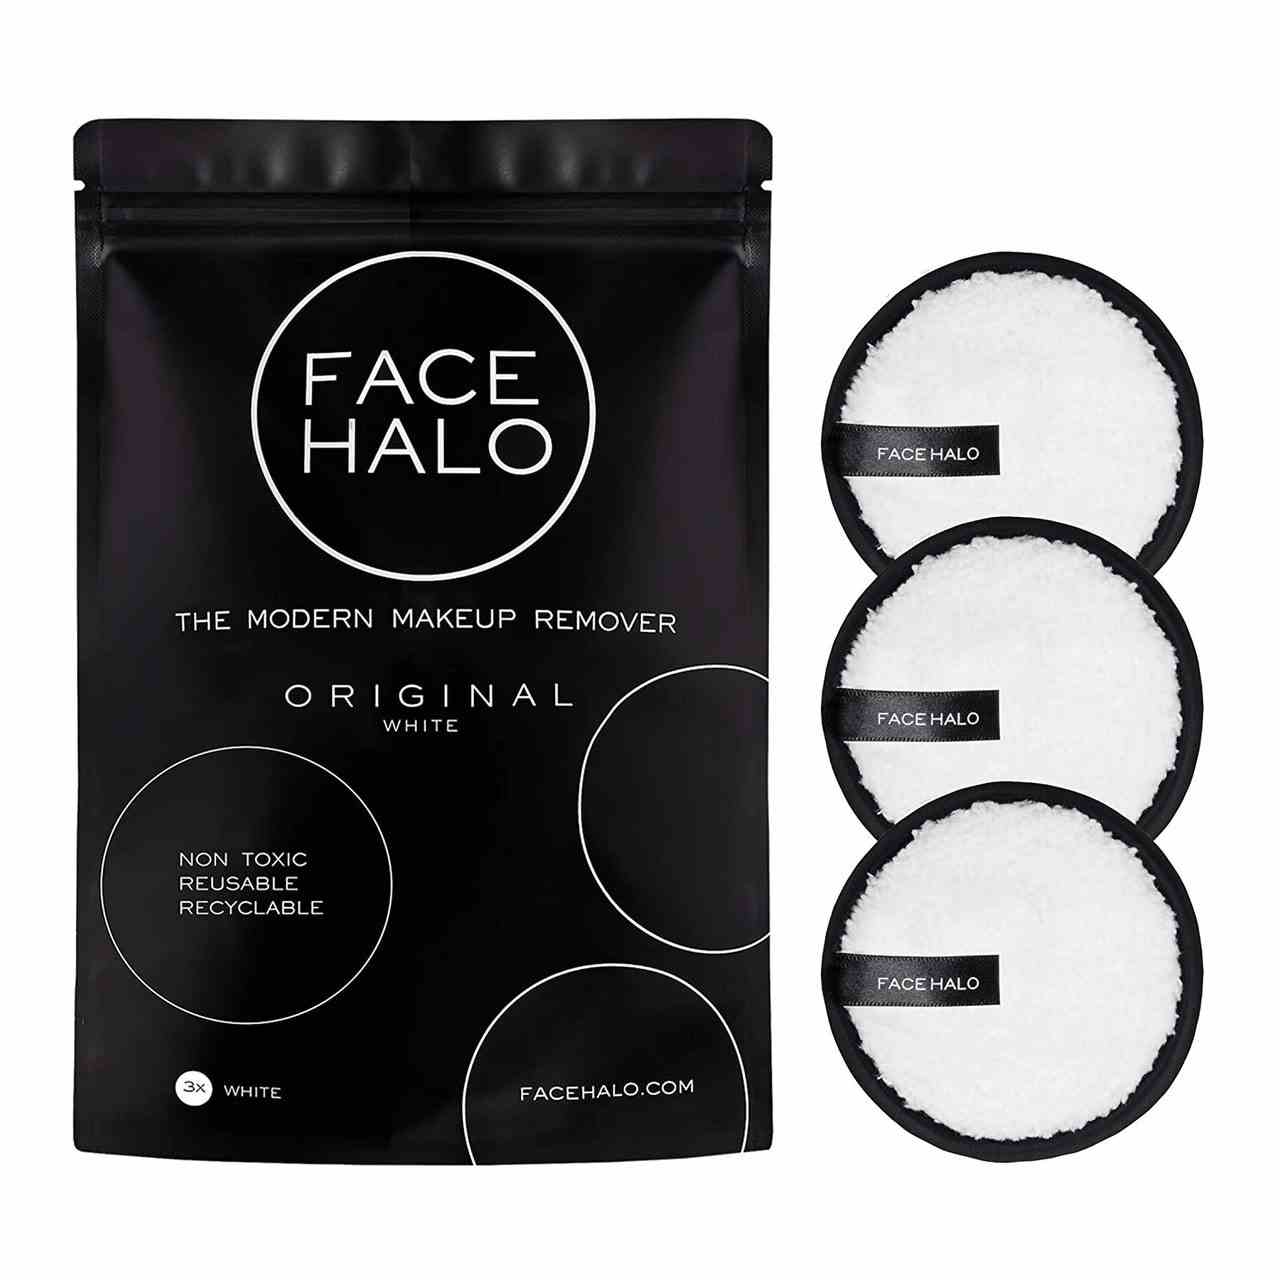 Face Halo wiederverwendbare Abschminkpads Runde weiße Abschminkpads mit schwarzem Innenfutter und schwarzer Tasche auf weißem Hintergrund